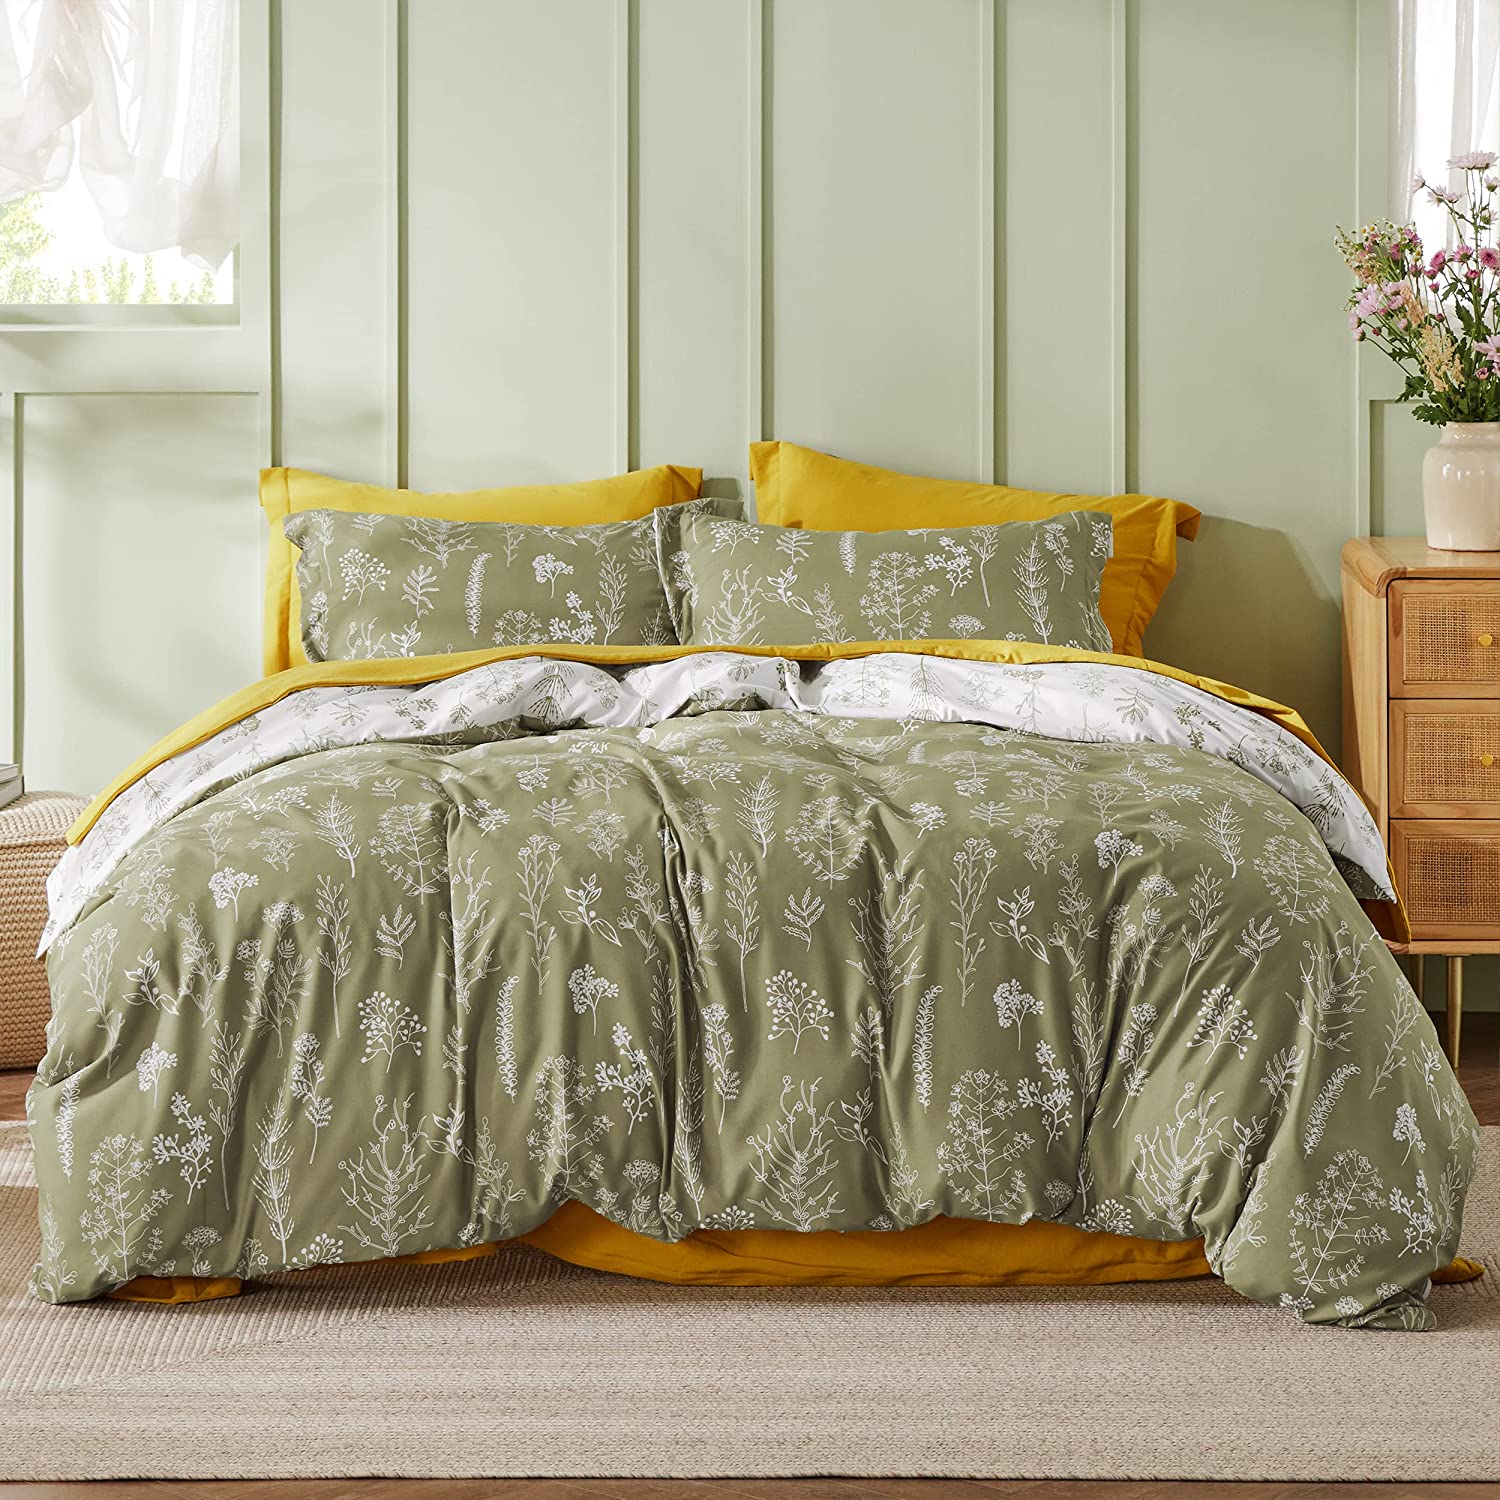 Bedsure Queen Comforter Set - Sage Green Comforter, Cute Floral